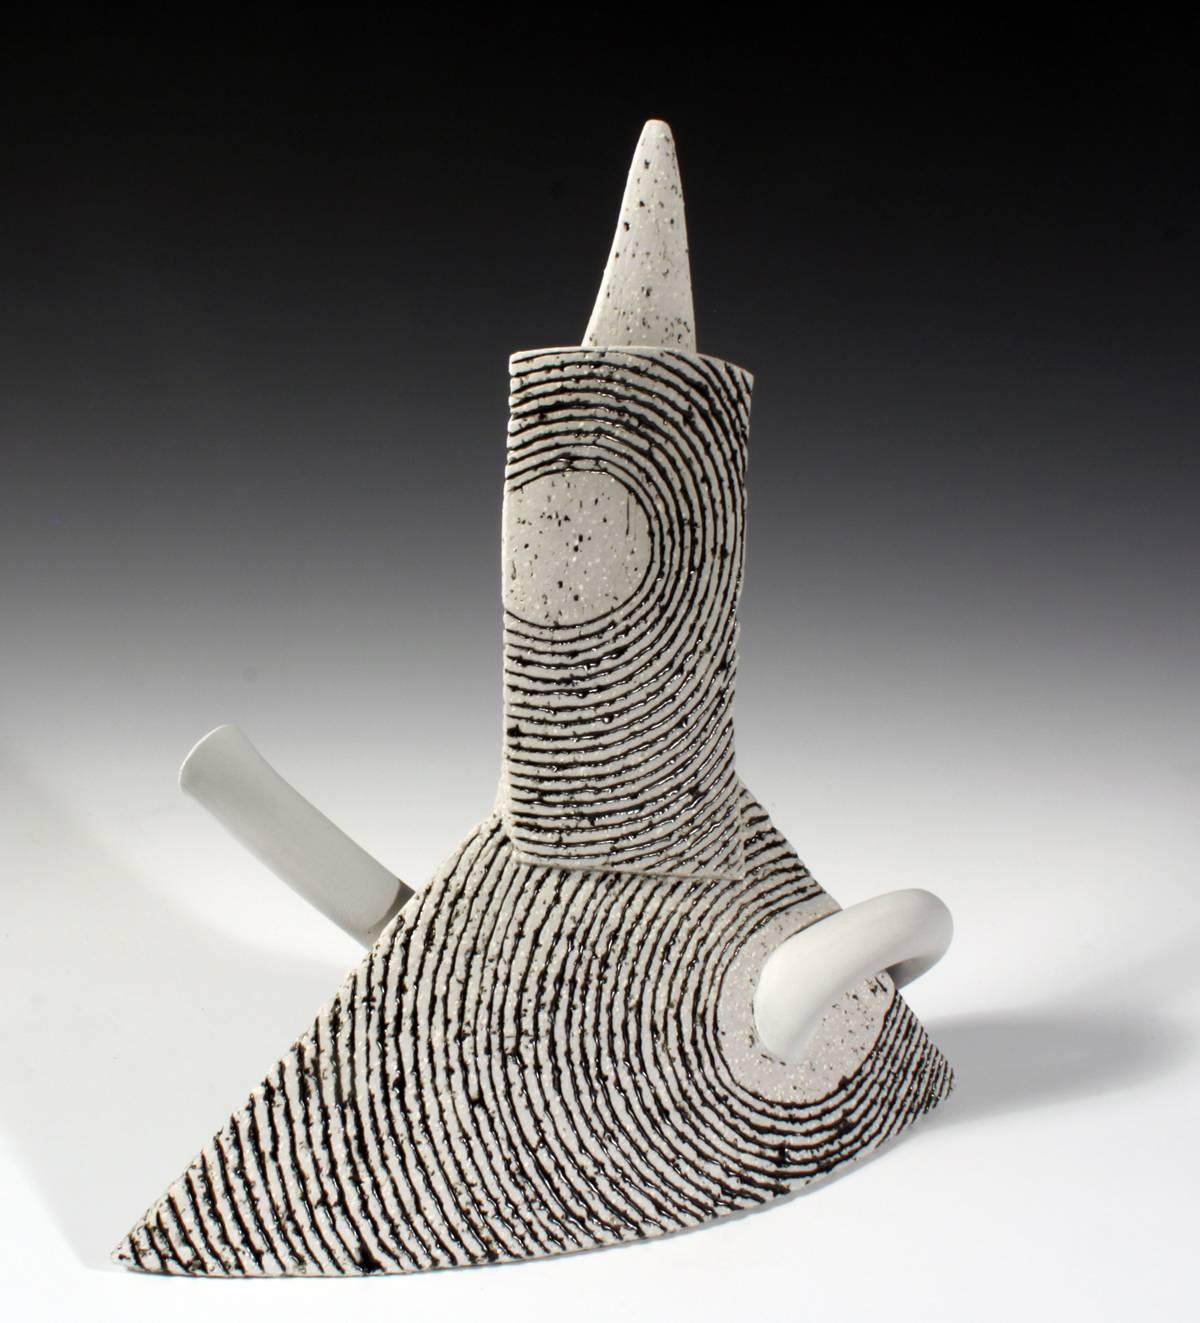 Untitled T-Pot Form - Sculpture by Harris Deller